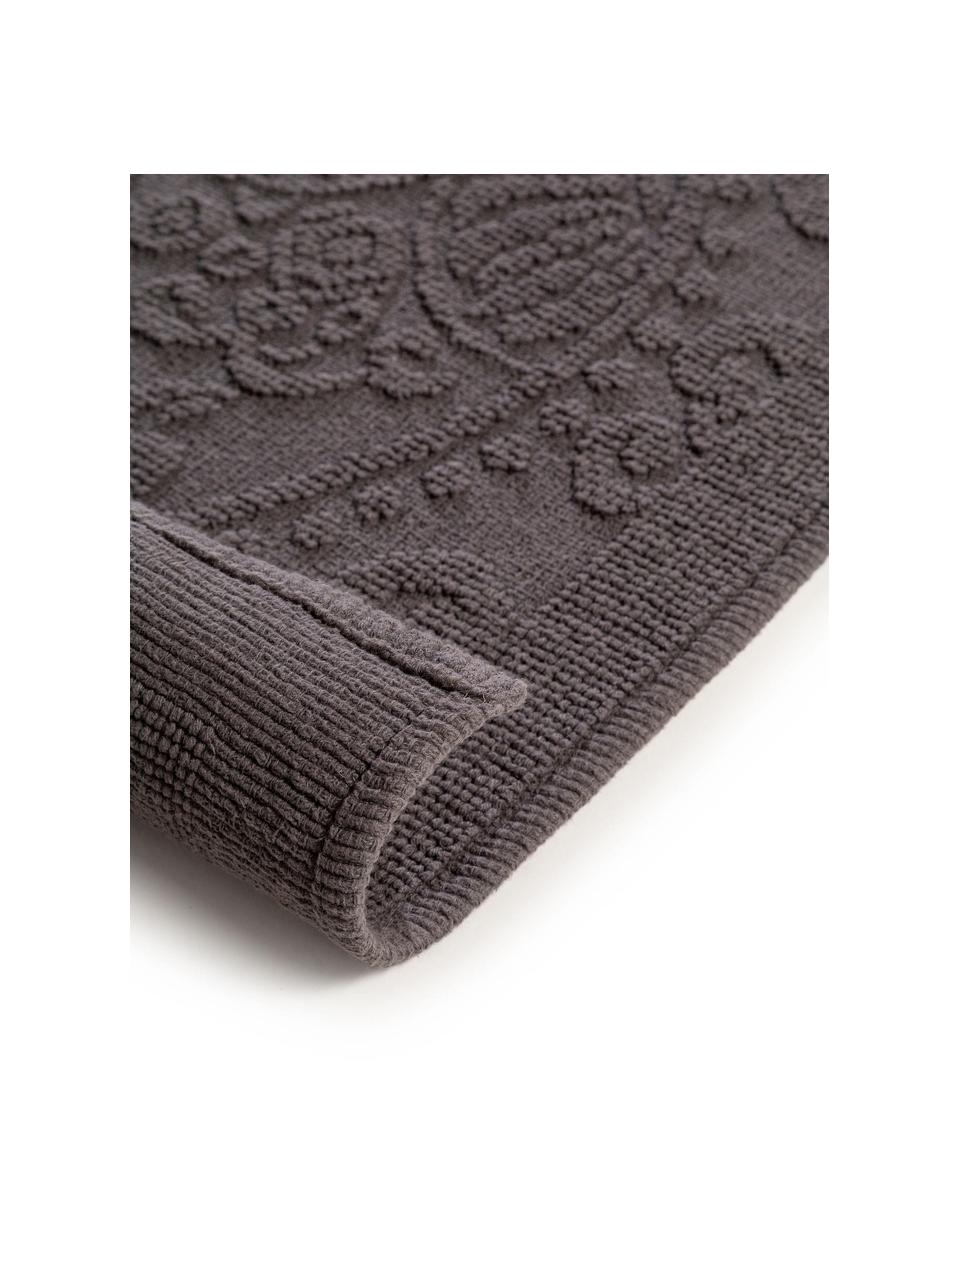 Tappeto bagno grigio con motivo floreale Kaya, 100% cotone, Grigio scuro, Larg. 60 x Lung. 100 cm